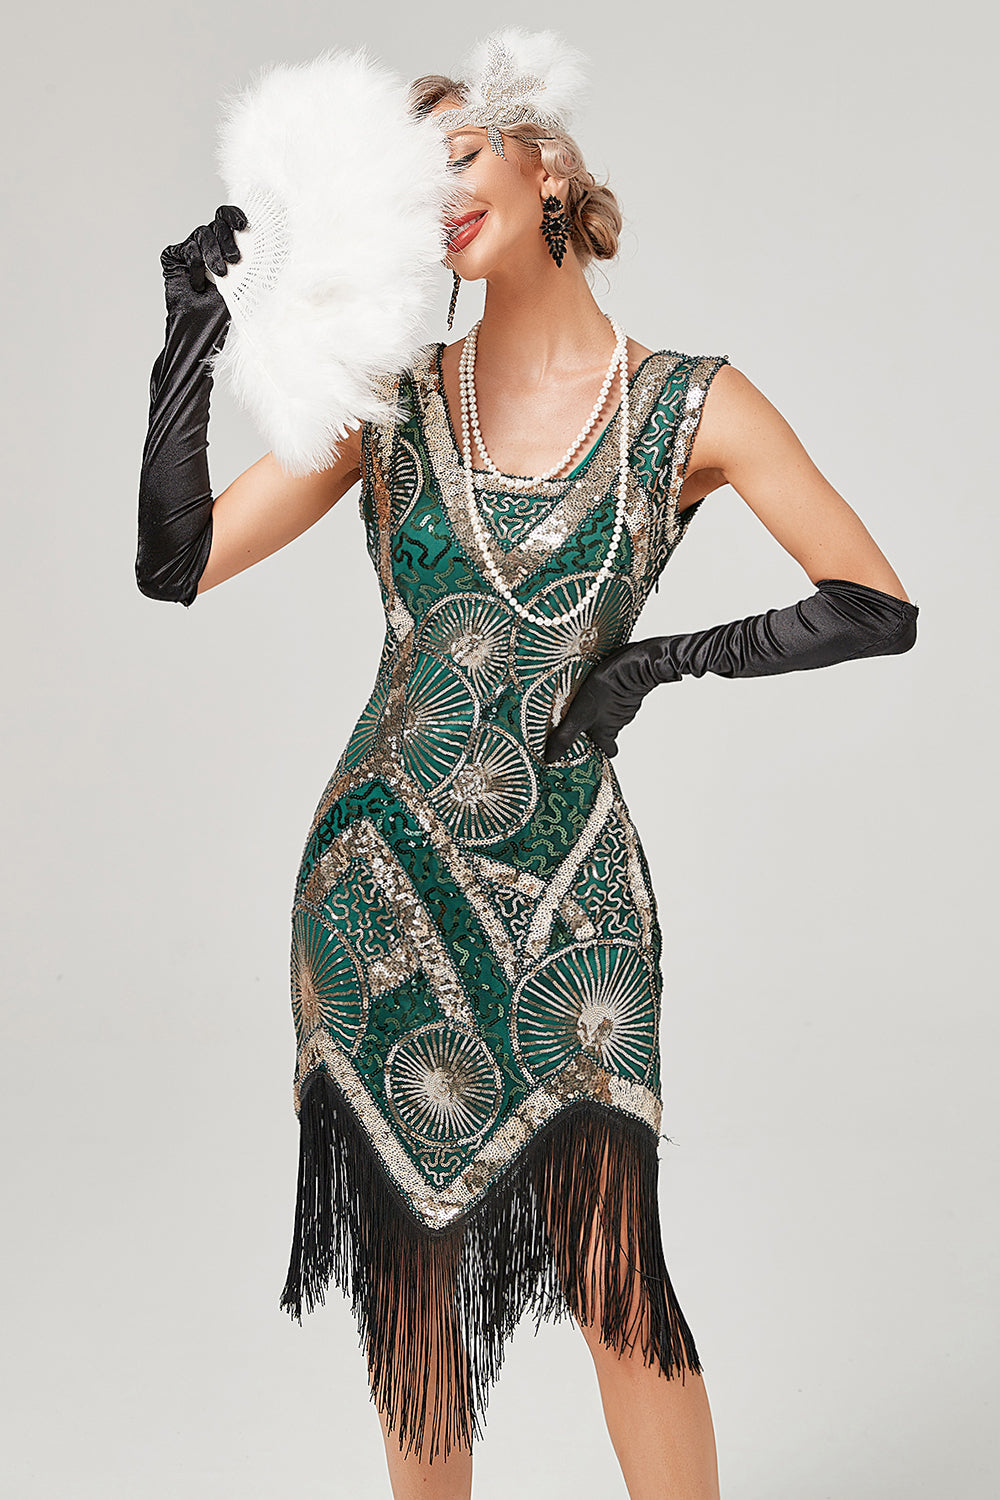 Robe femme, robes à clapet de cocktail Gatsby, déguisements